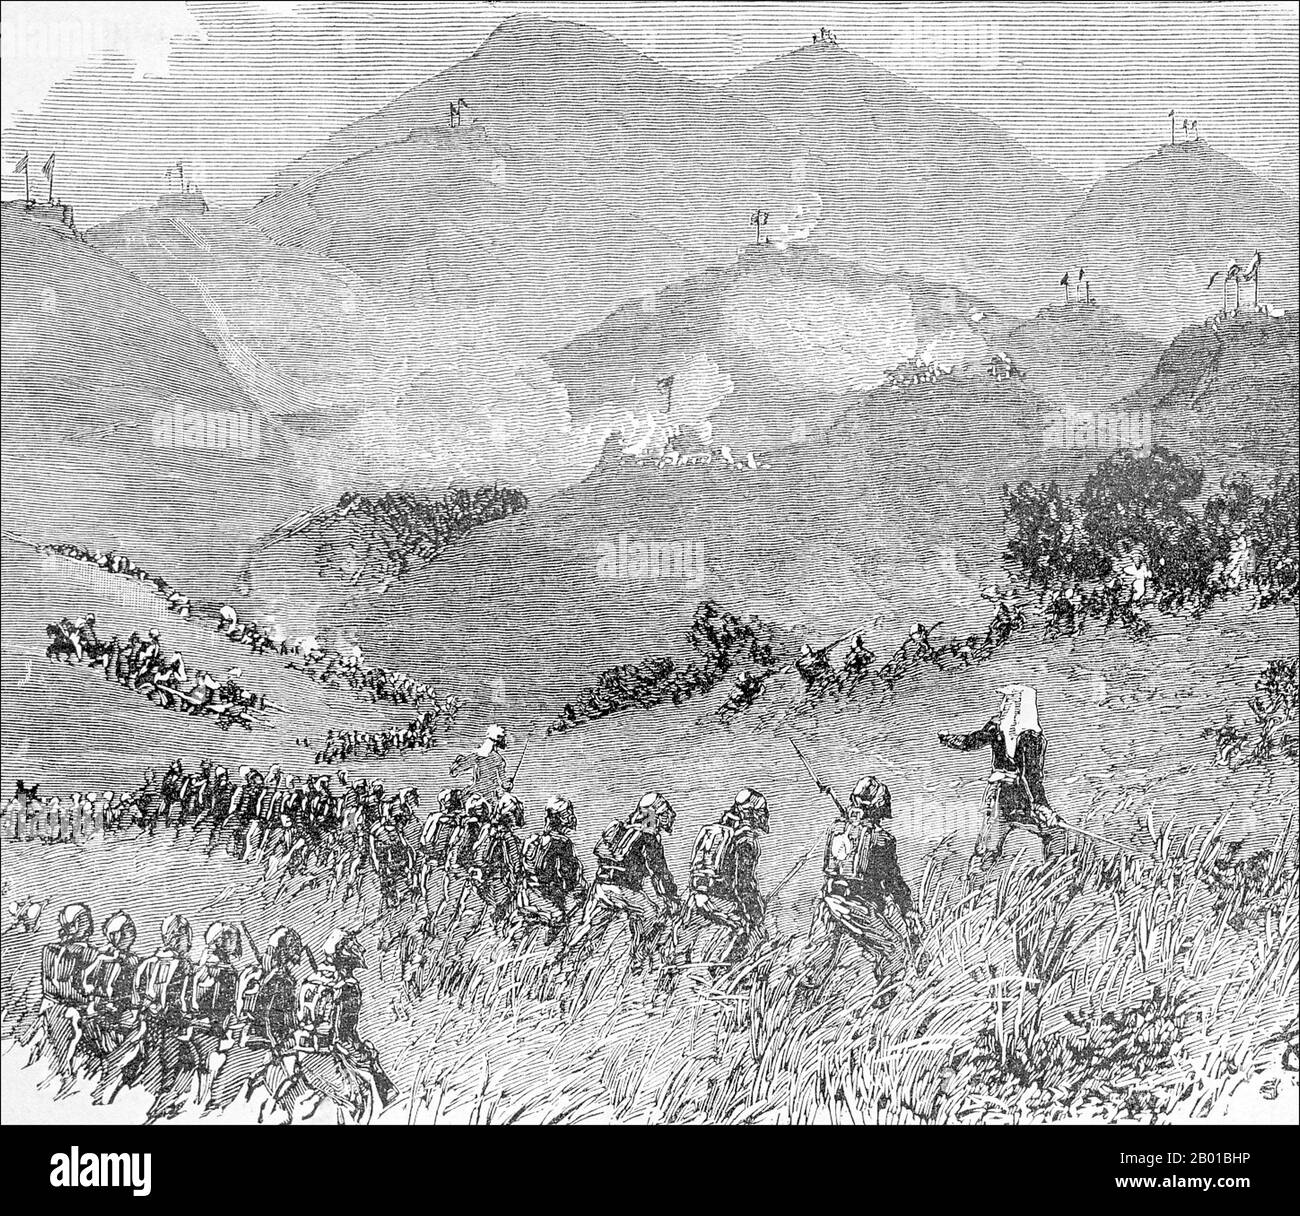 Vietnam/Frankreich: Während der Schlacht von Bac Vie, 12. Februar 1885, marschieren französische Truppen auf chinesische Hügelpositionen vor. Gravur, 1887. Die Tonkin-Kampagne (französisch: Campagne du Tonkin) war ein bewaffneter Konflikt, der zwischen Juni 1883 und April 1886 von den Franzosen gegen die Vietnamesen, Liu Yongfus Armee mit schwarzer Flagge und die chinesischen Armeen Guangxi und Yunnan geführt wurde, um Tonkin (Nordvietnam) zu besetzen und dort ein französisches Protektorat zu verankern. Stockfoto